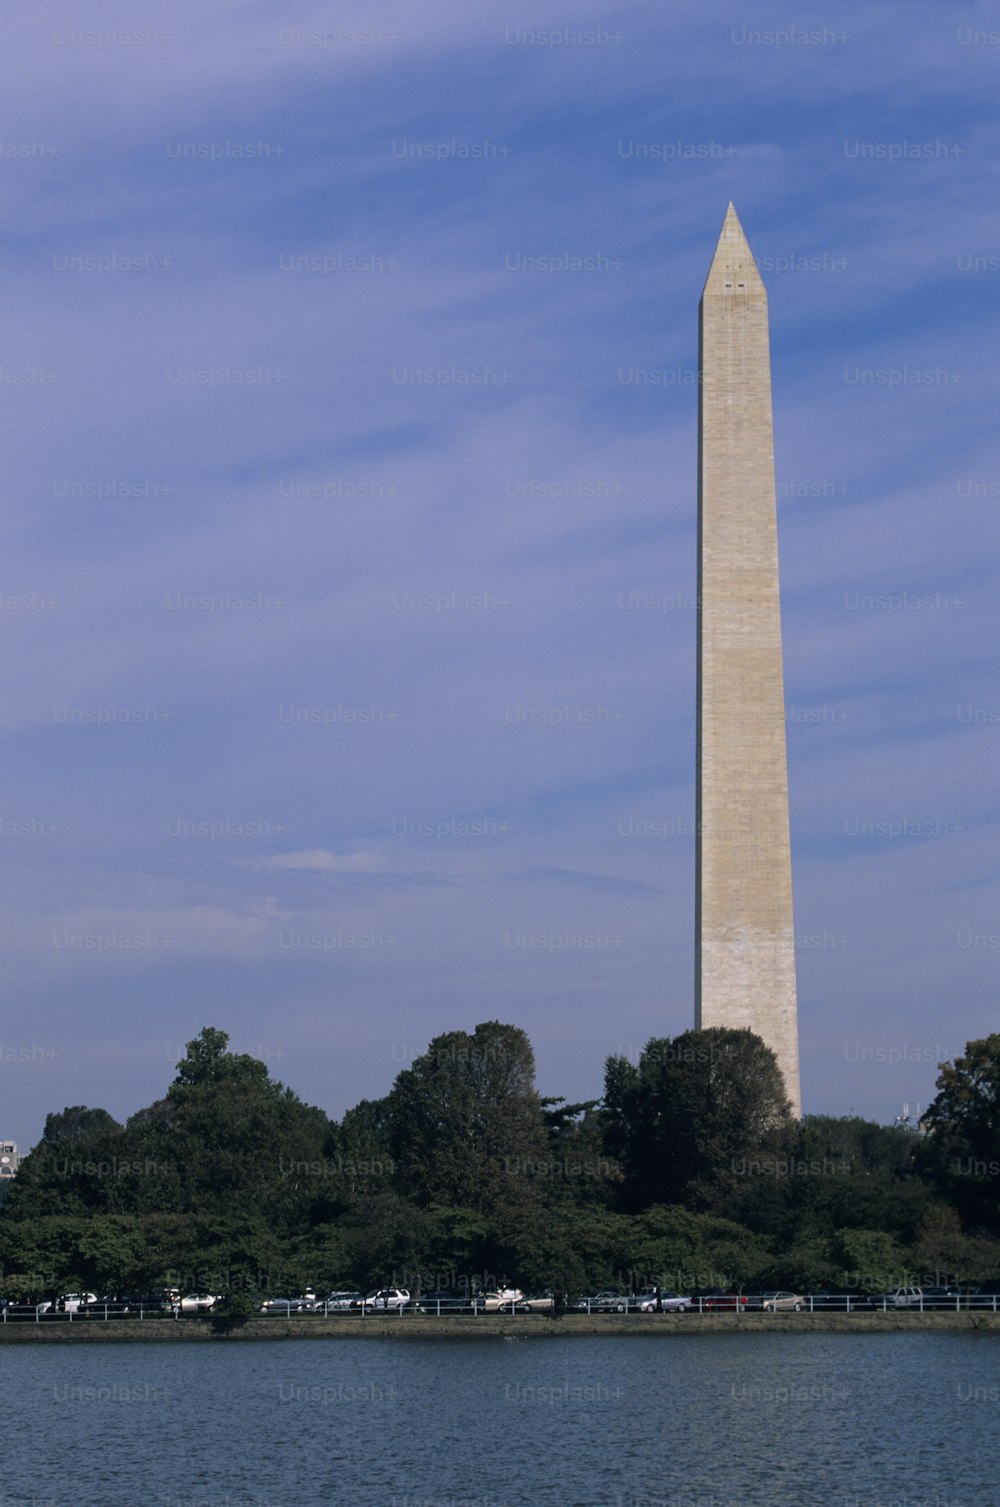 Le Washington Monument à Washington, DC est vu de l’autre côté de l’eau